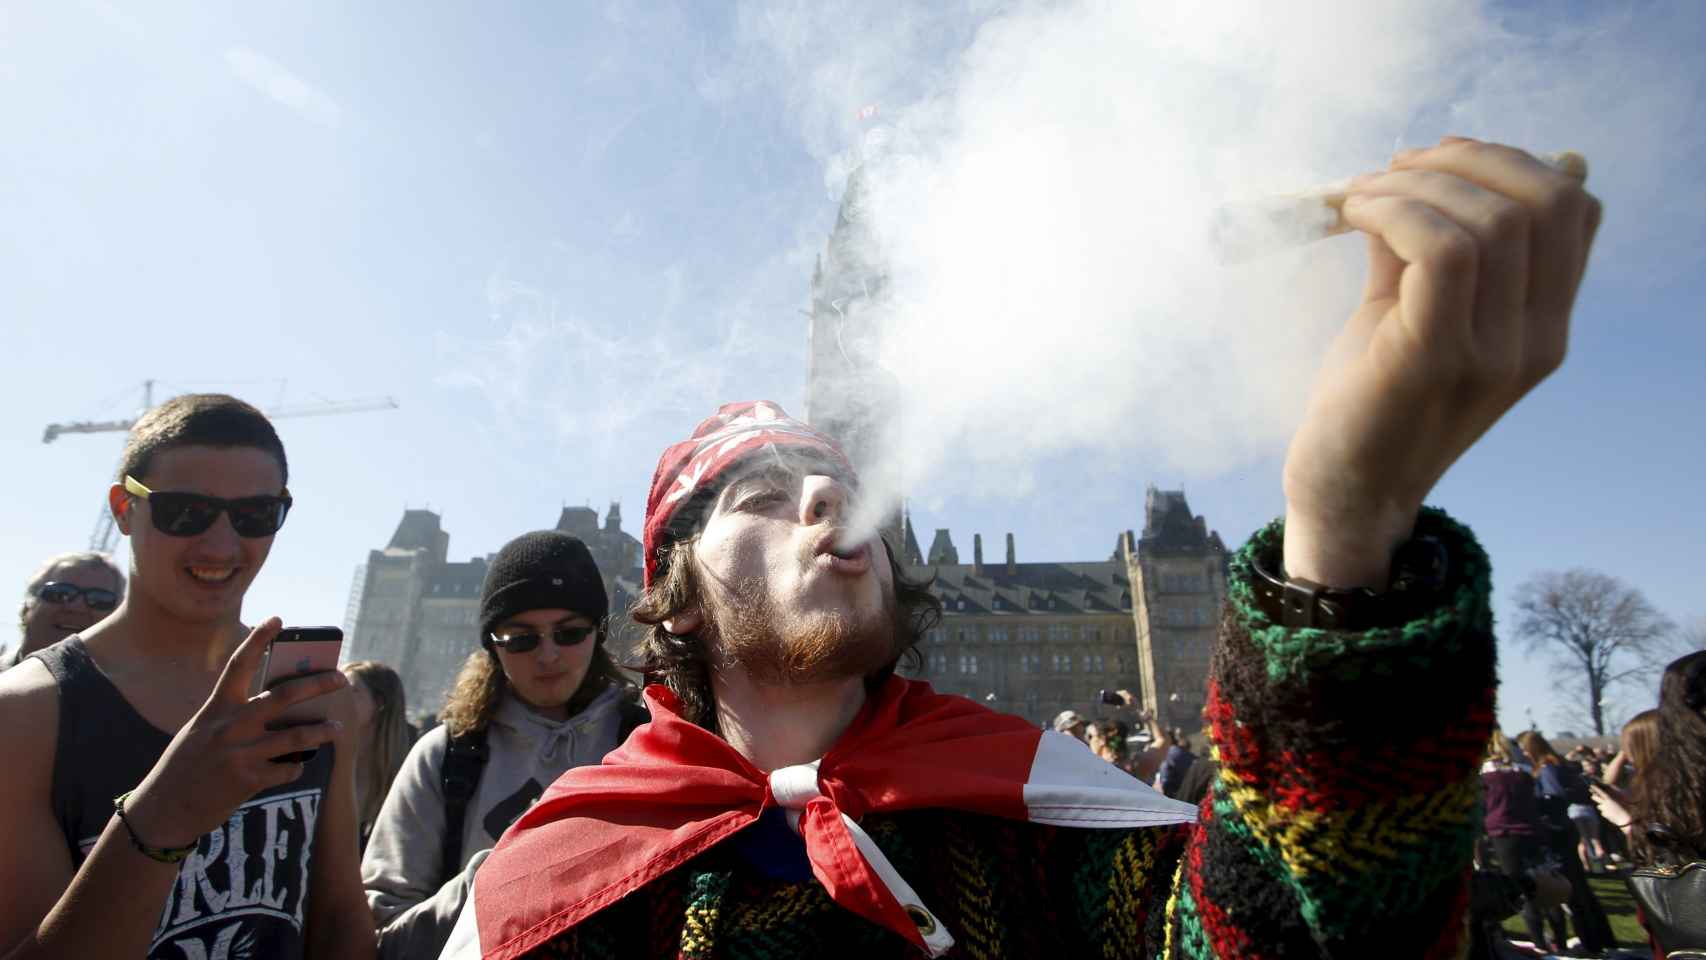 Un hombre fuma marihuana frente al Parlamento de Ottawa, en Canadá.